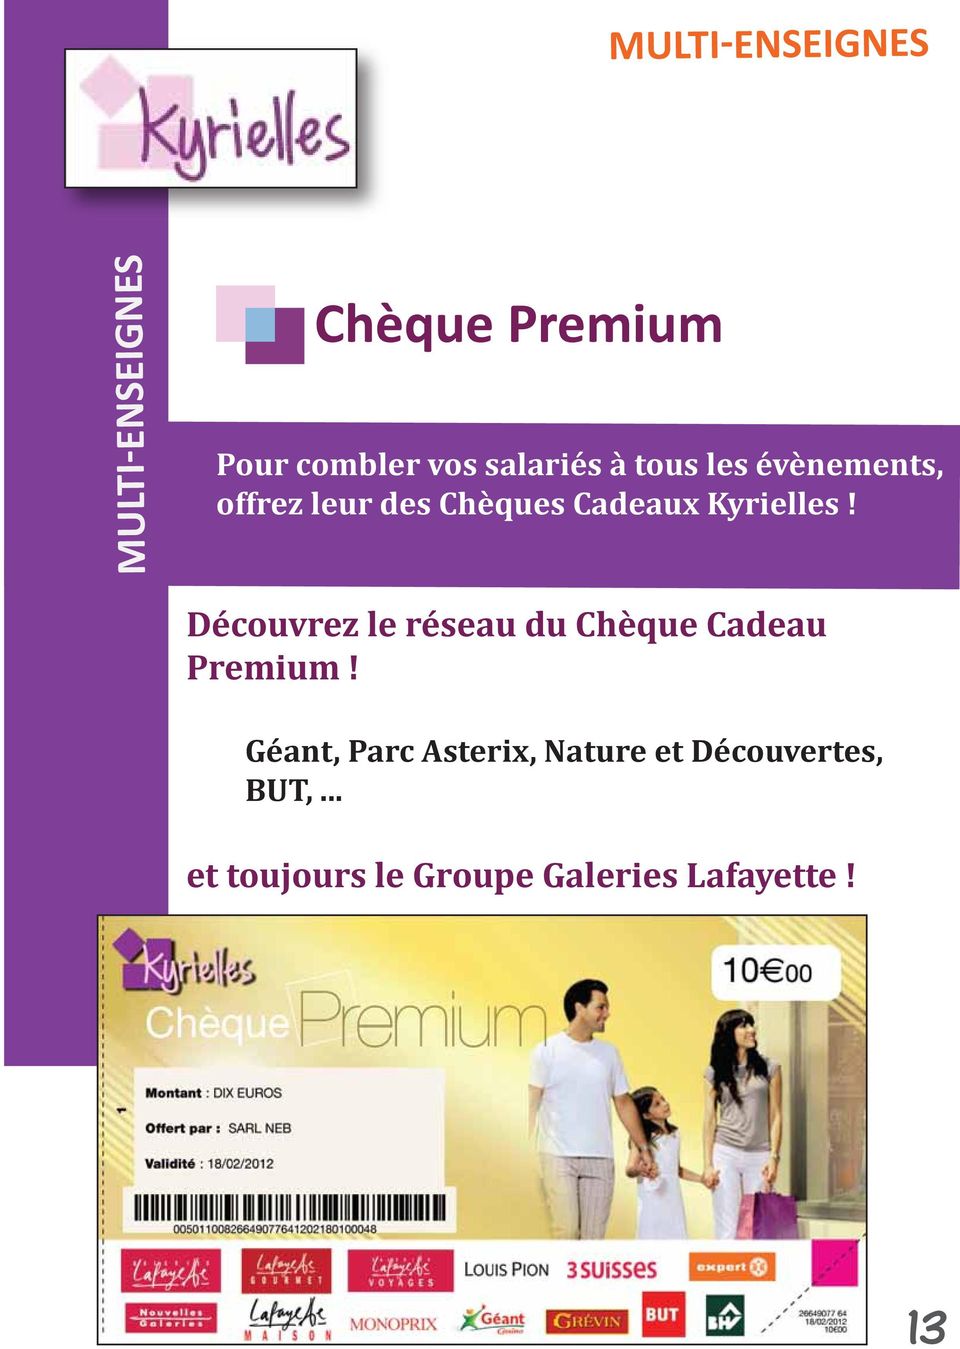 Kyrielles! Découvrez le réseau du Chèque Cadeau Premium!